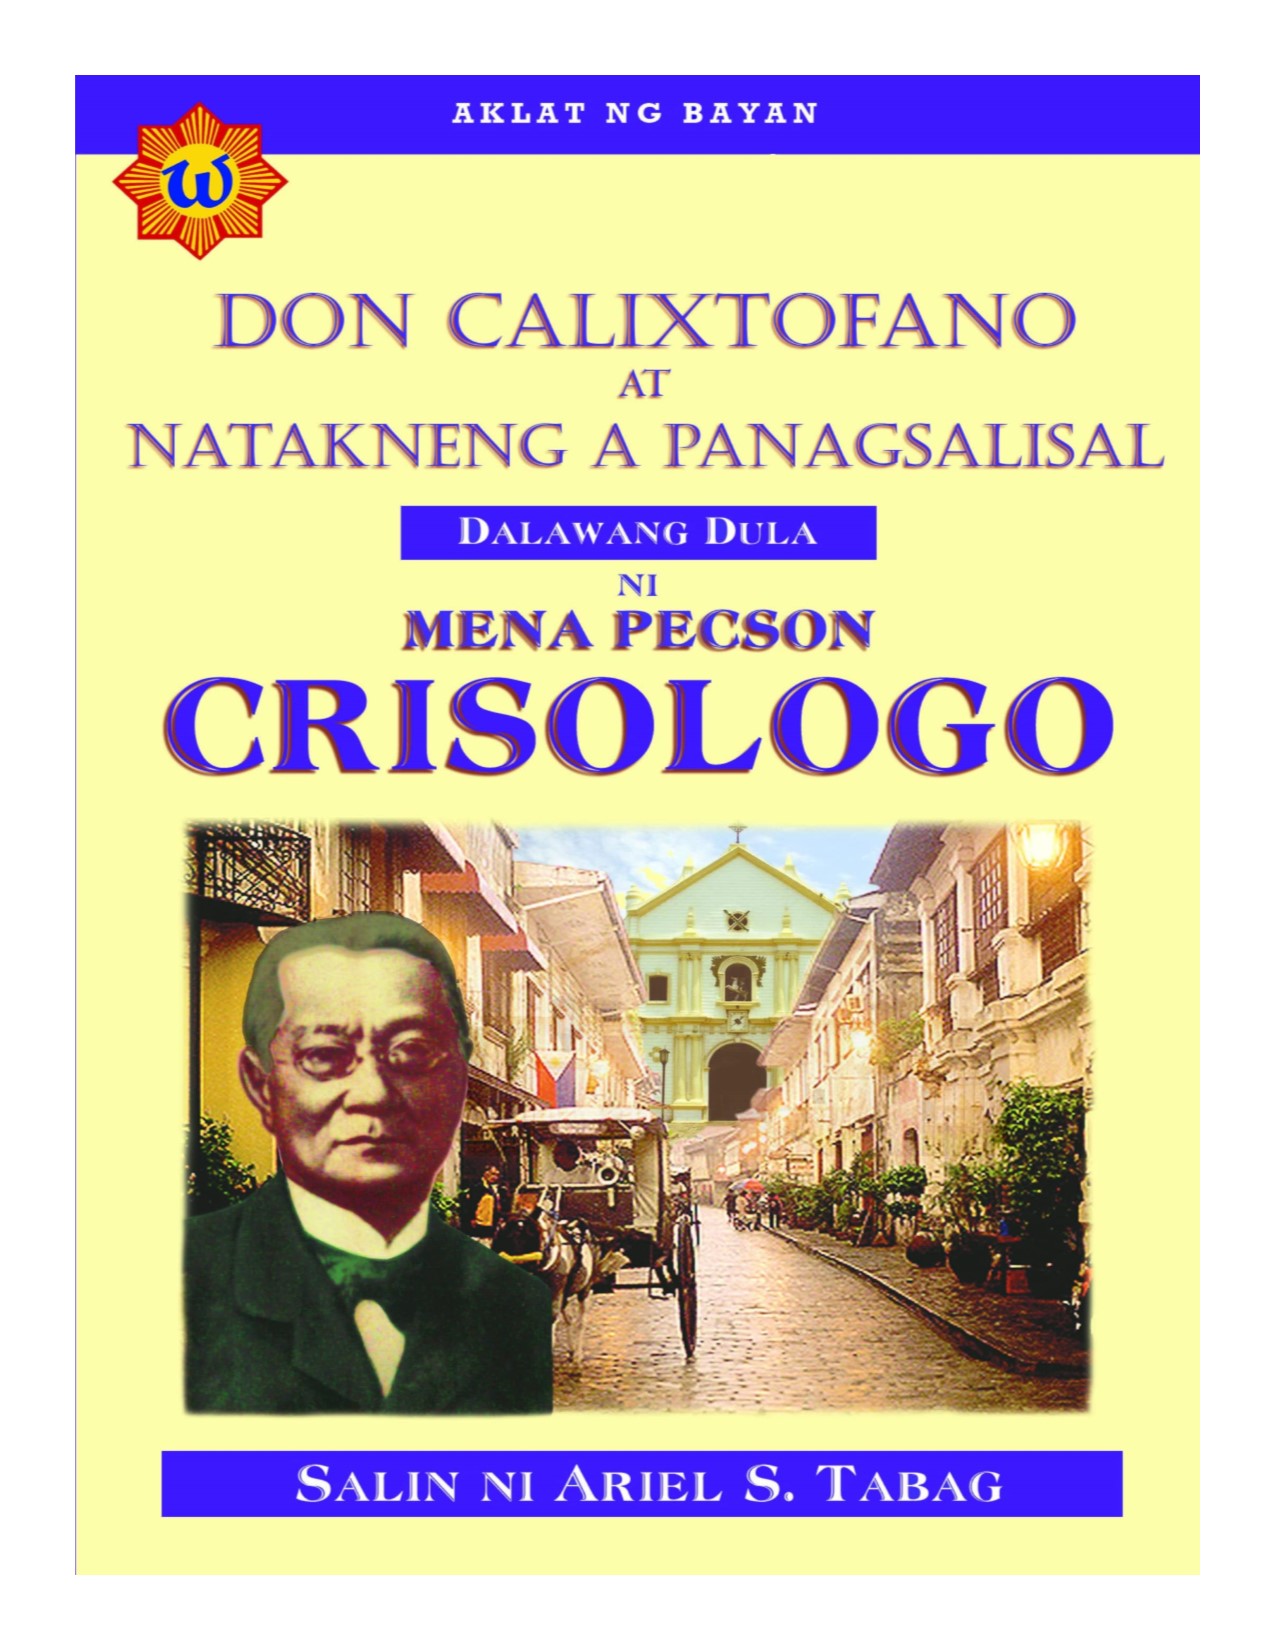 Don Calixtofano at natakneng a panagsalisal dalawang dula